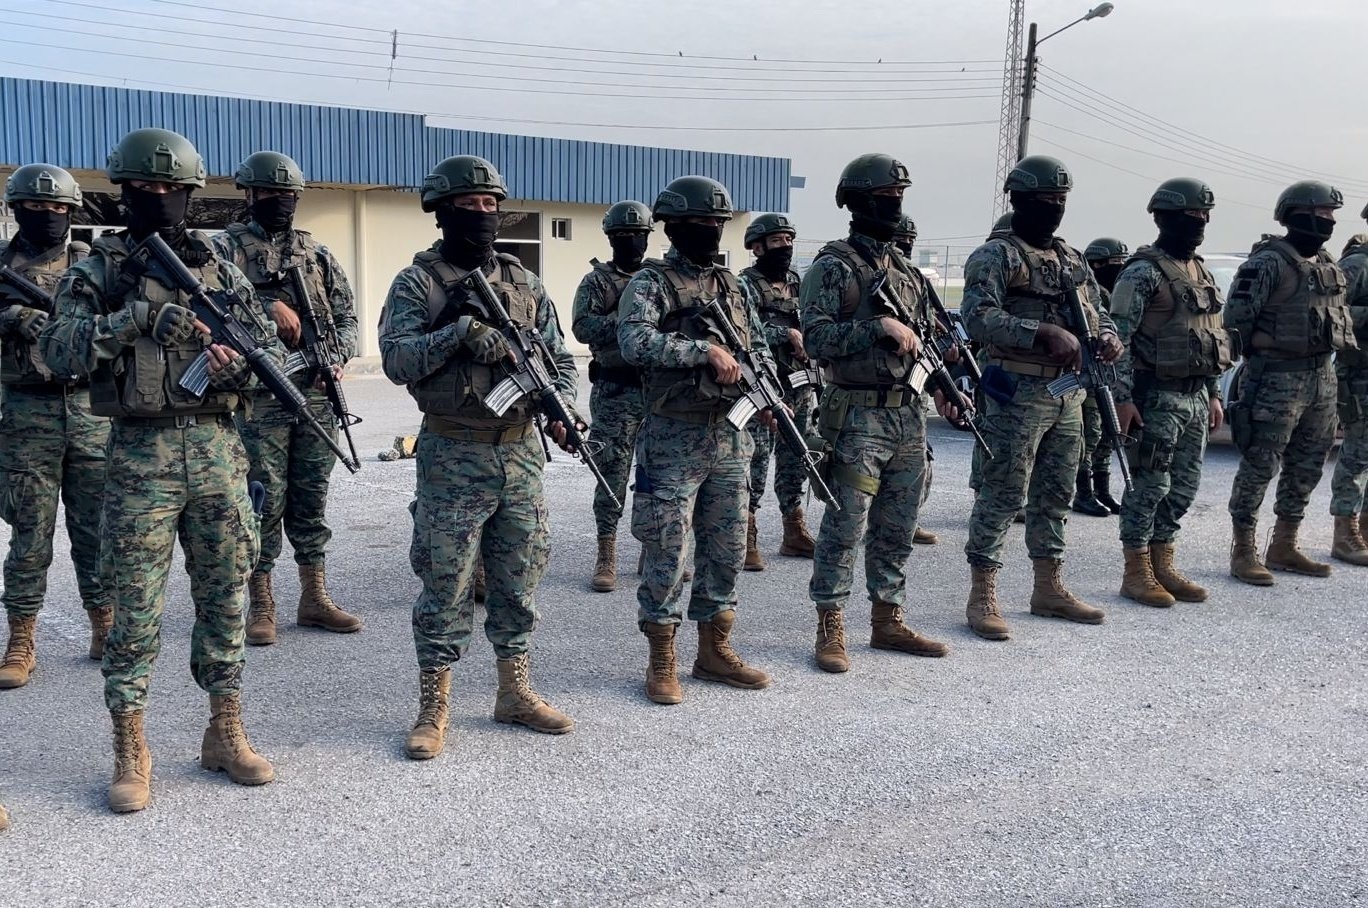 Fuerzas Armadas moviliza a 300 militares a Durán por el aumento de la violencia